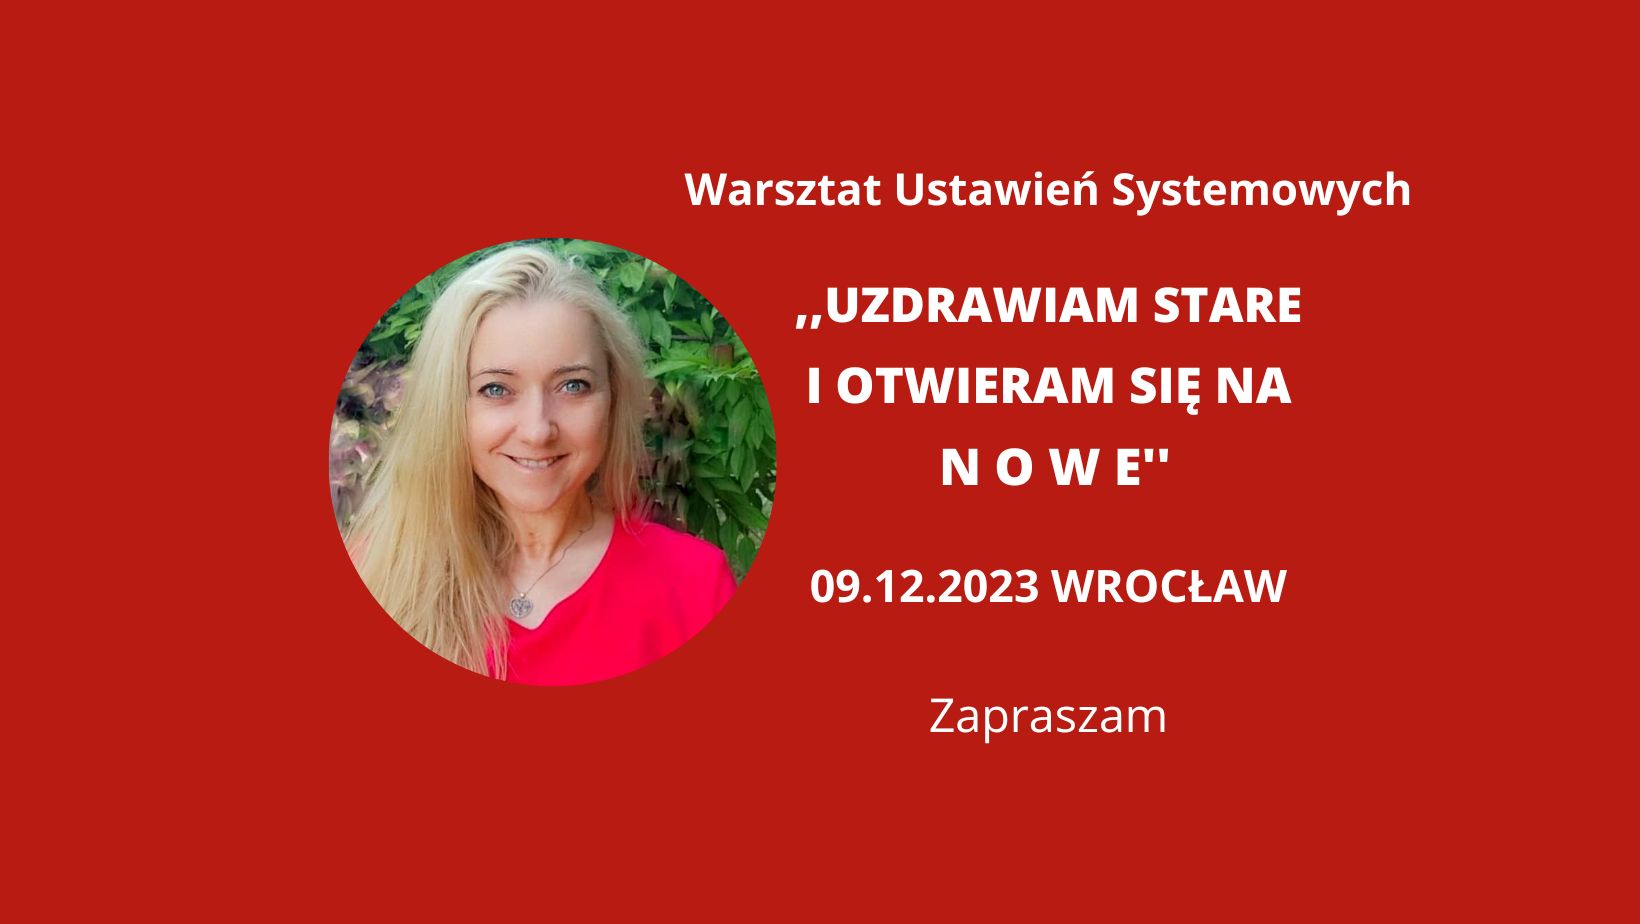 You are currently viewing 09.12.2023 Wrocław „Uzdrawiam stare i otwieram się na nowe” Warsztat Ustawień Systemowych